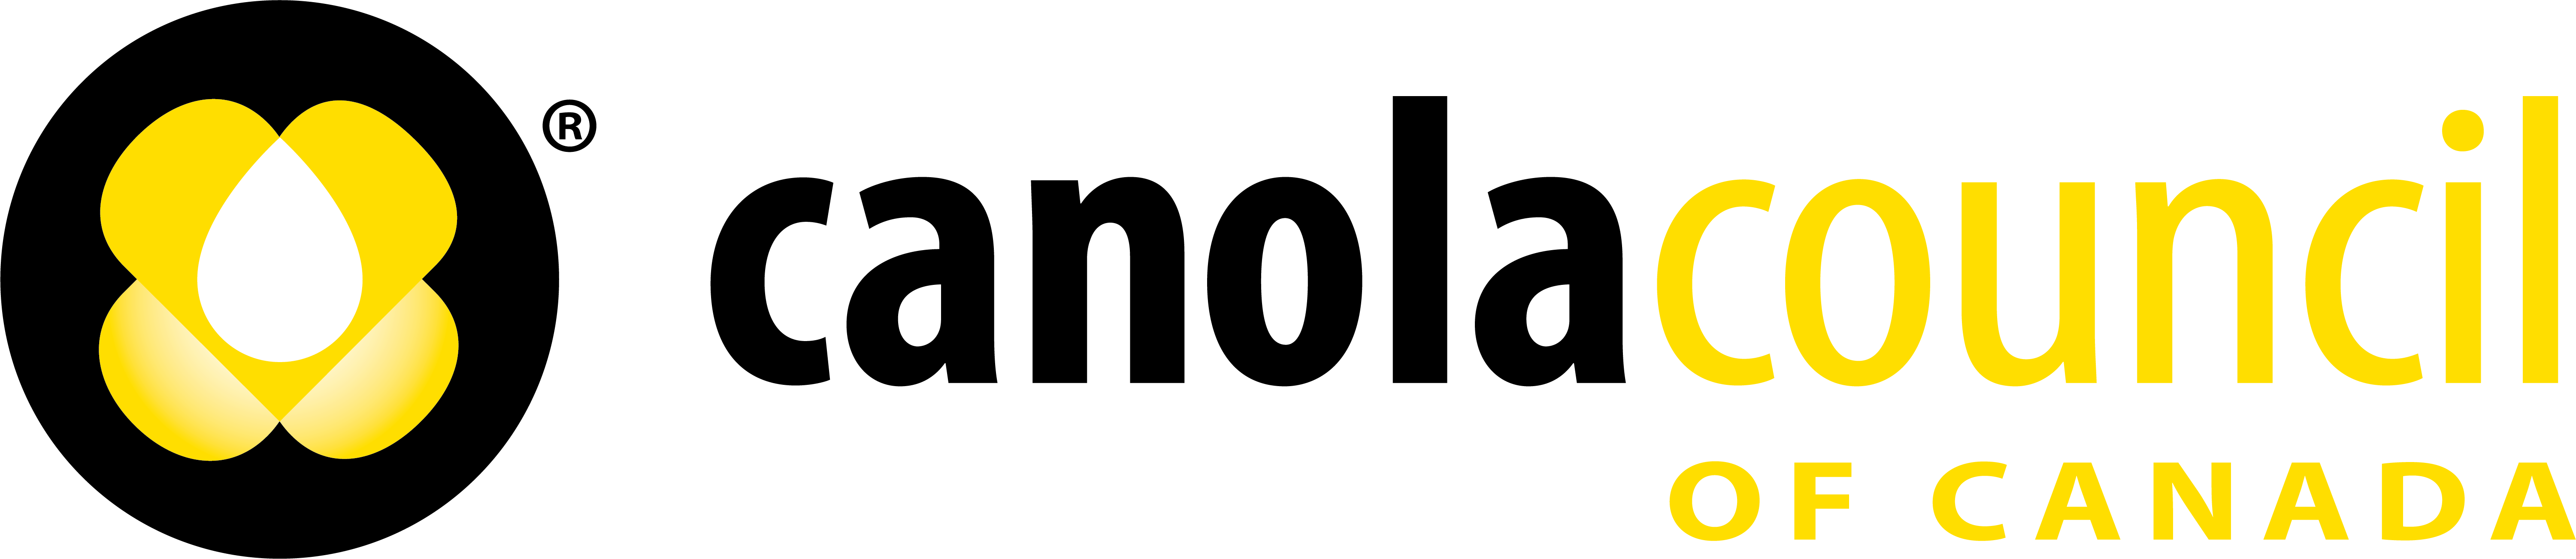 Canola Council of Canada logo